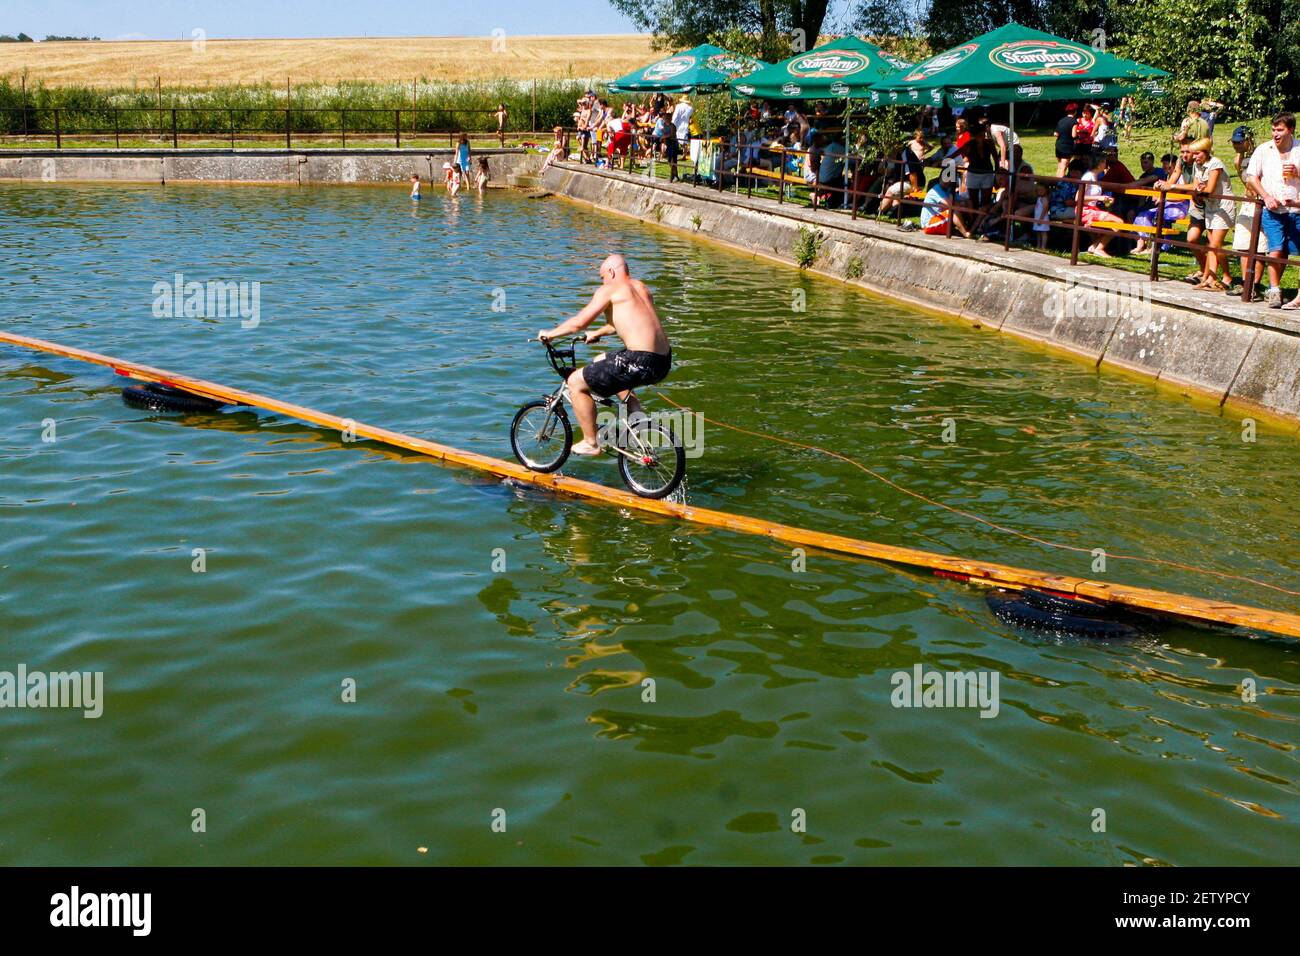 Sports insolites, traverser le réservoir d'eau à vélo République tchèque en été la vie rurale une compétition annuelle bizarre vélo de sport traversant l'eau Banque D'Images